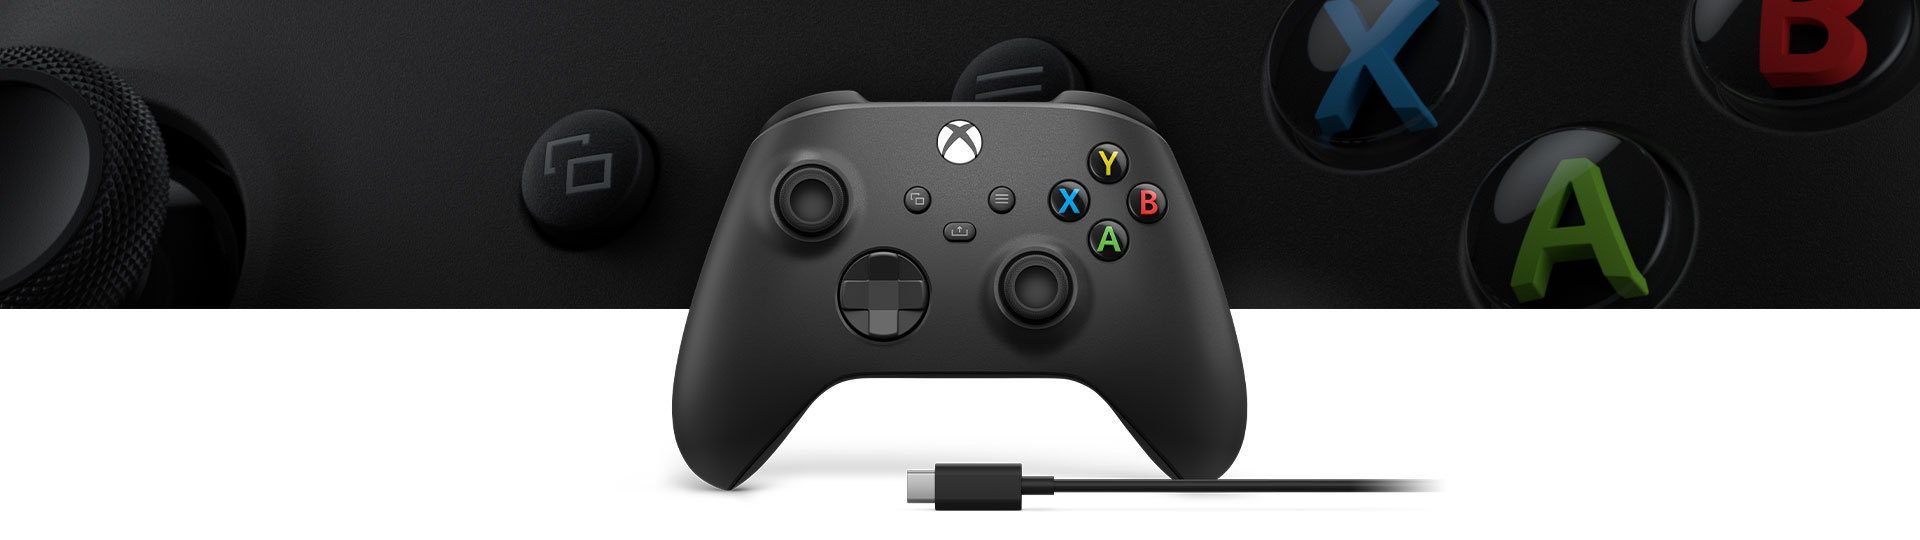 Xbox Wireless Controller + USB-C®-Kabel mit einer Nahaufnahme des Controller-Oberflächenmusters